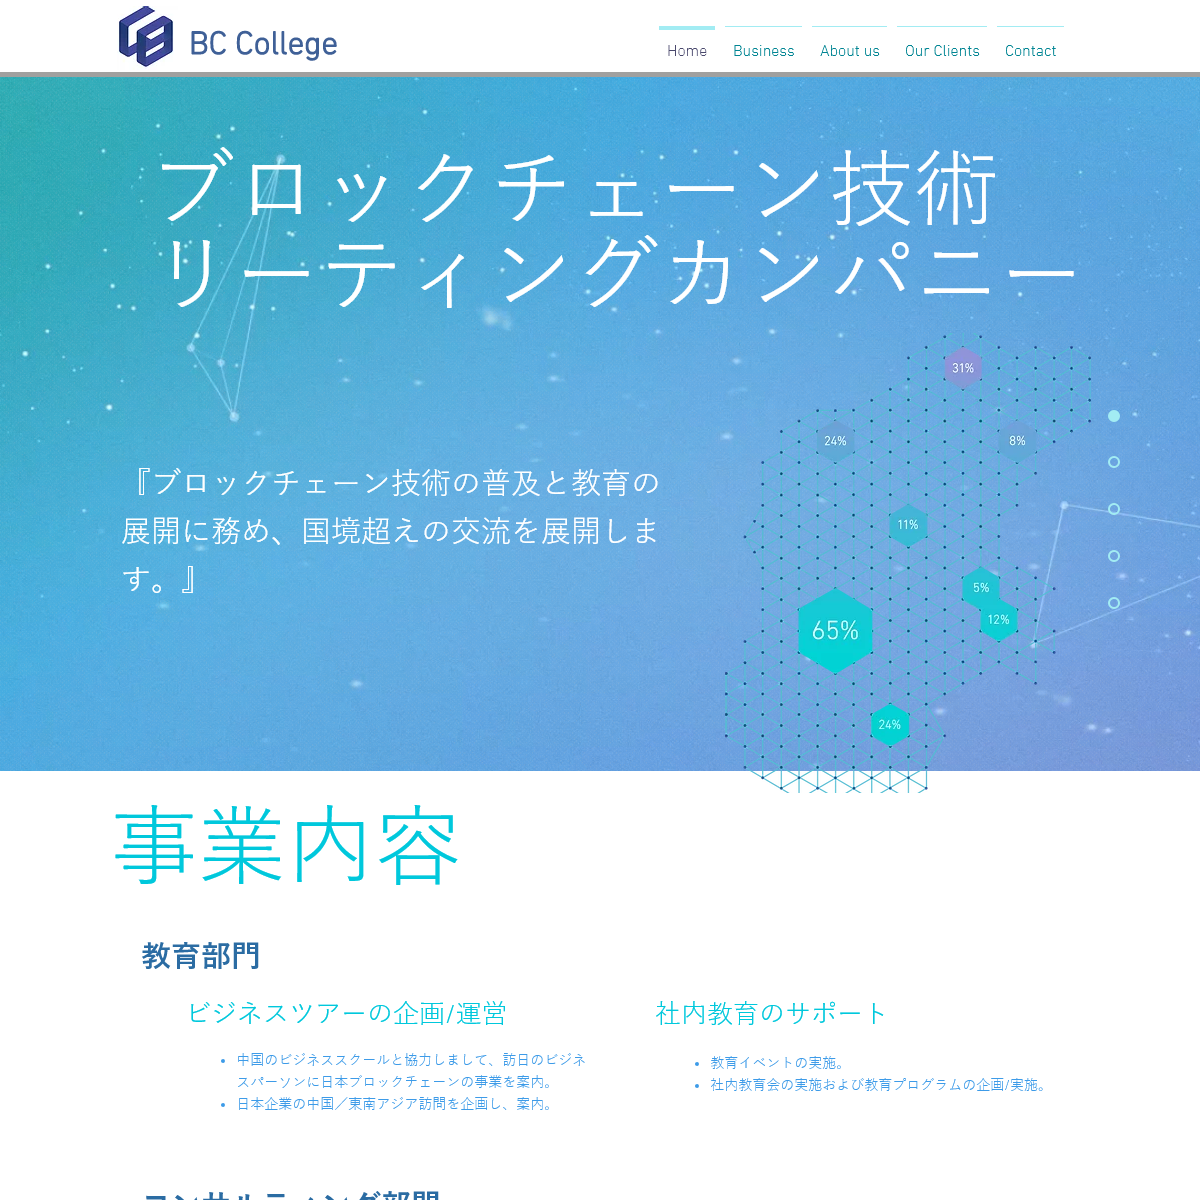 BCCollege - æ—¥æœ¬ - Bccollege.net - æ ªå¼ä¼šç¤¾ BC College - bccollege